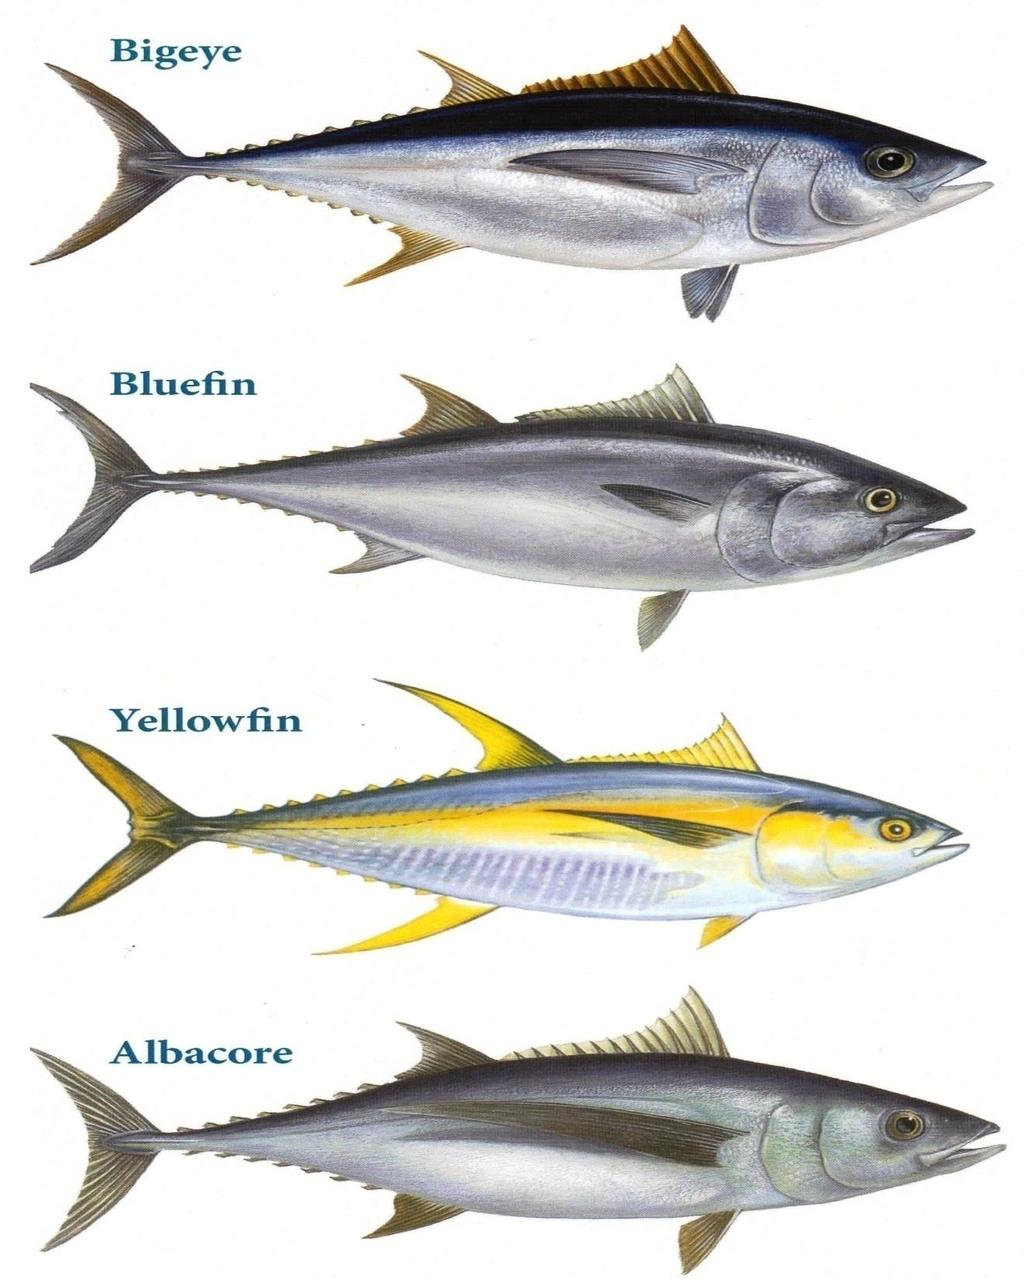 Species of Tuna